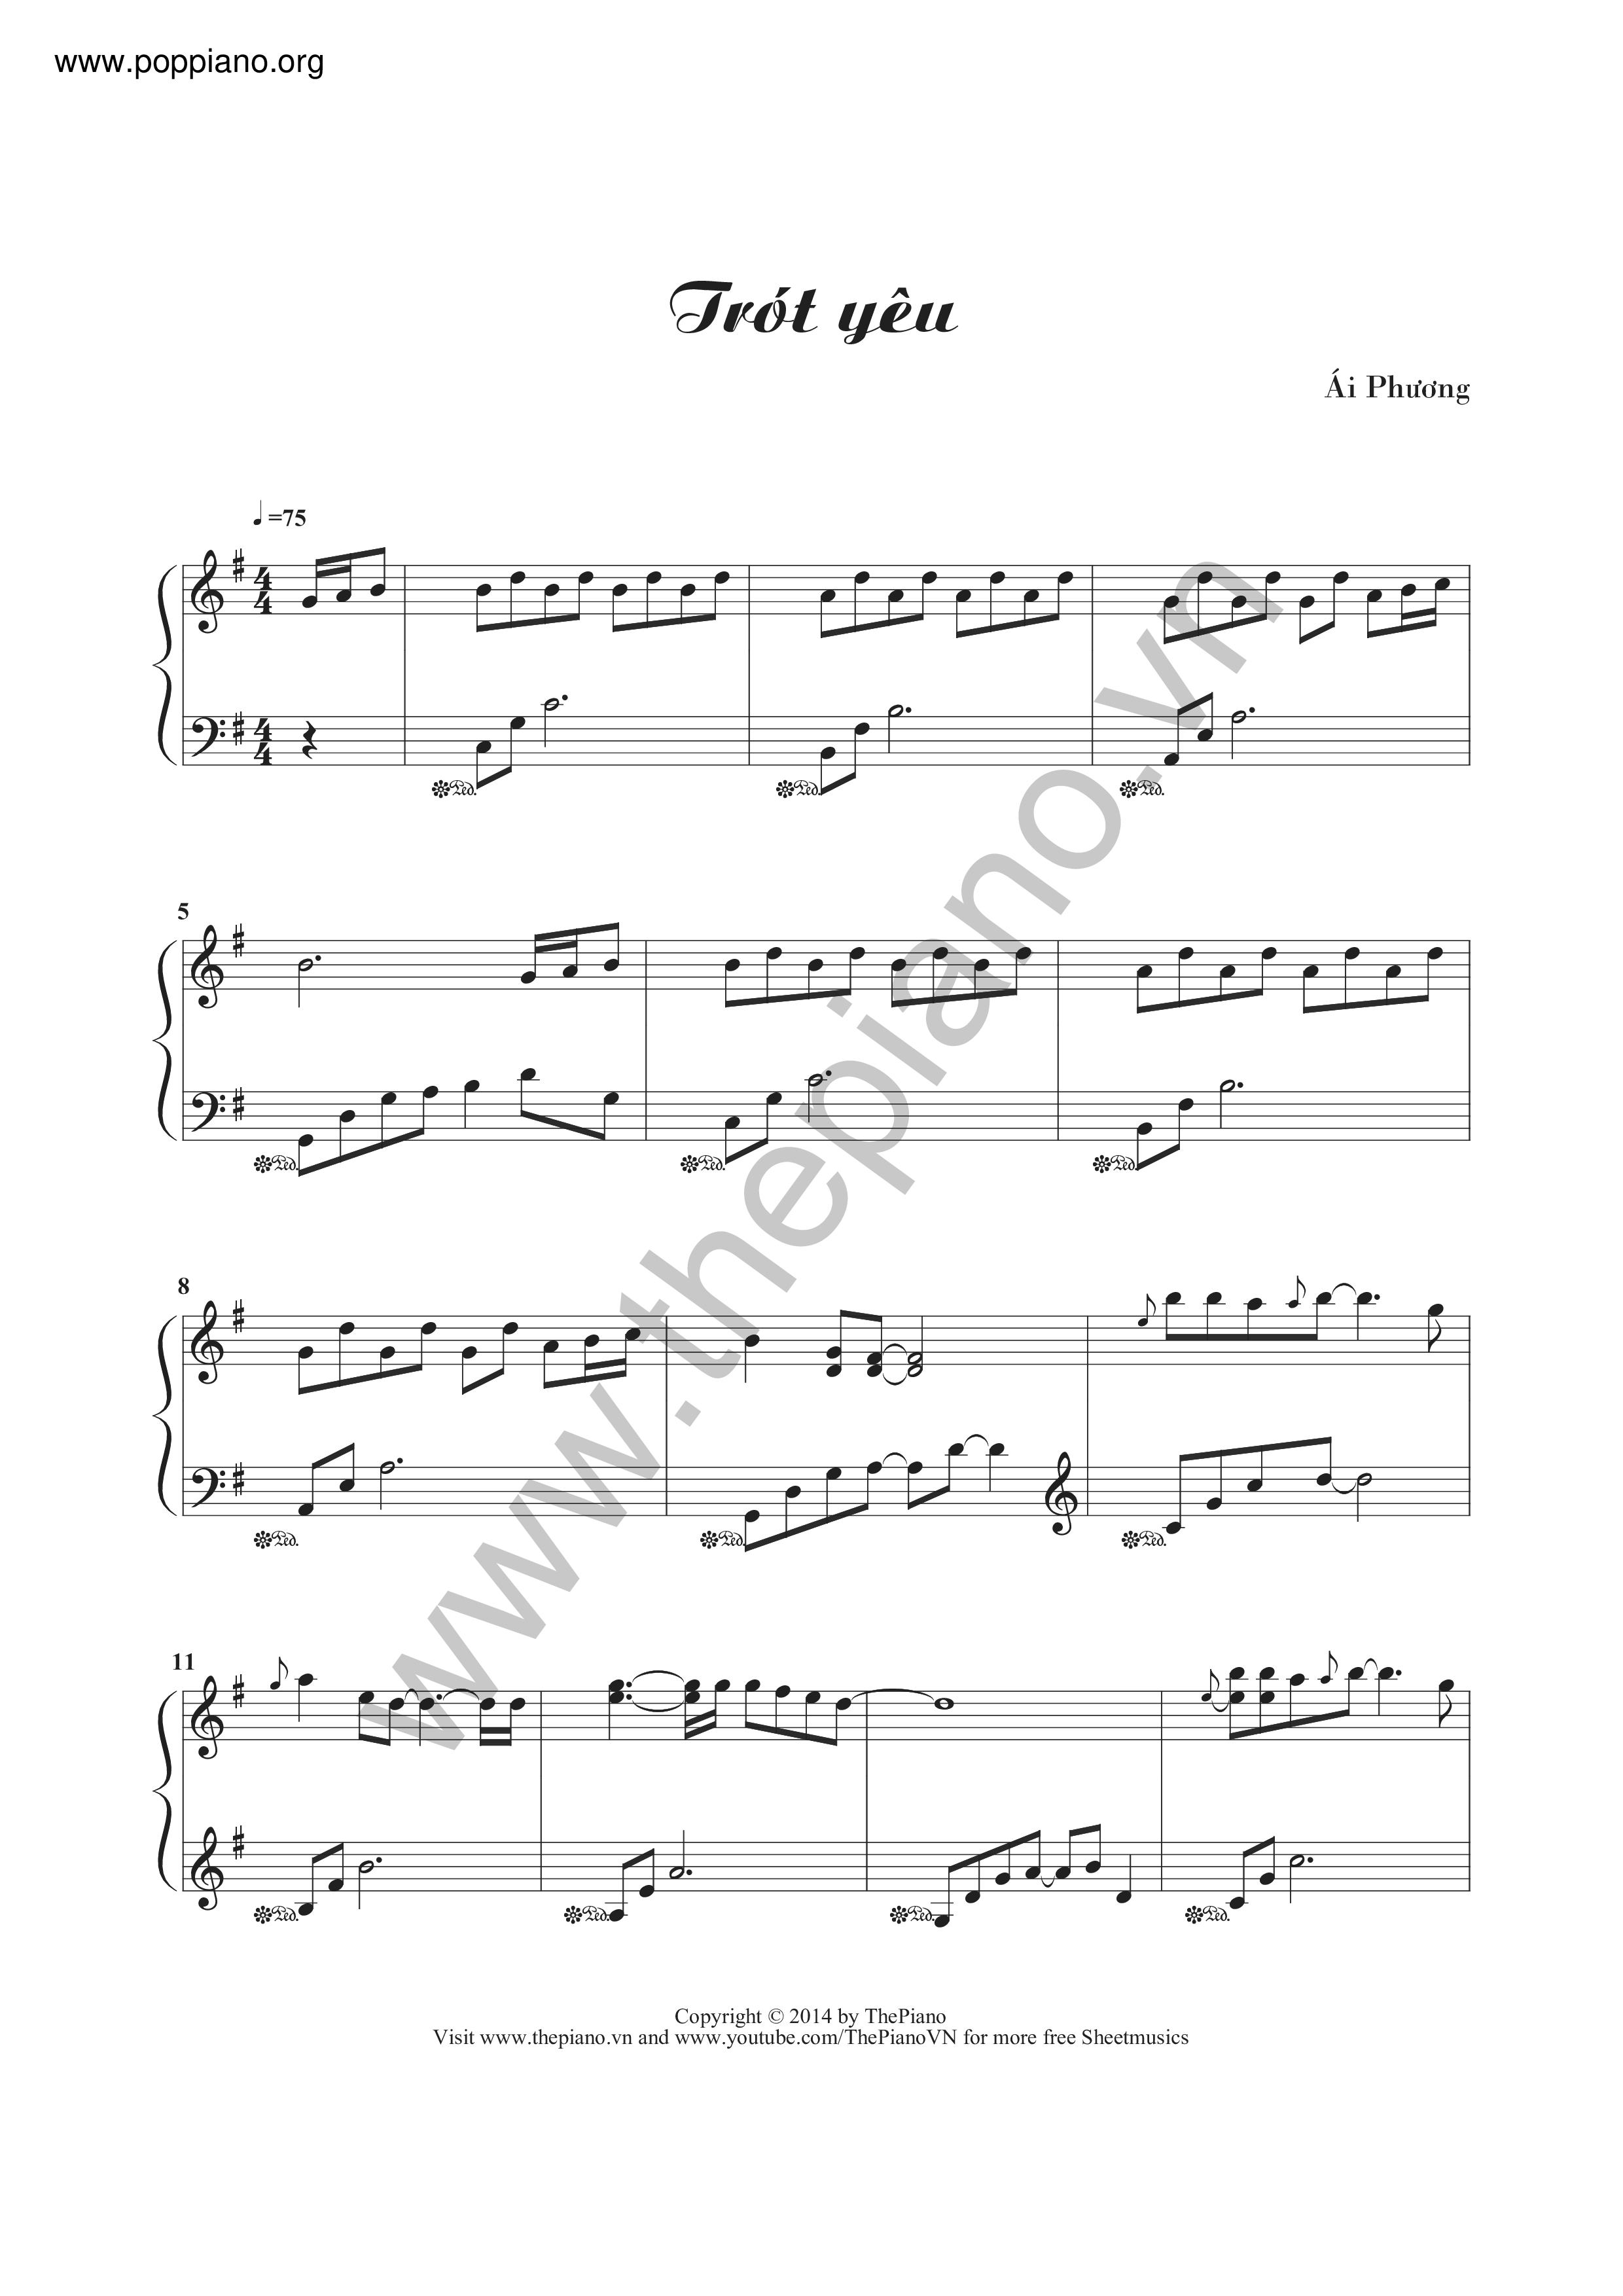 Trung Quan Trot Yeu Sheet Music Pdf Free Score Download